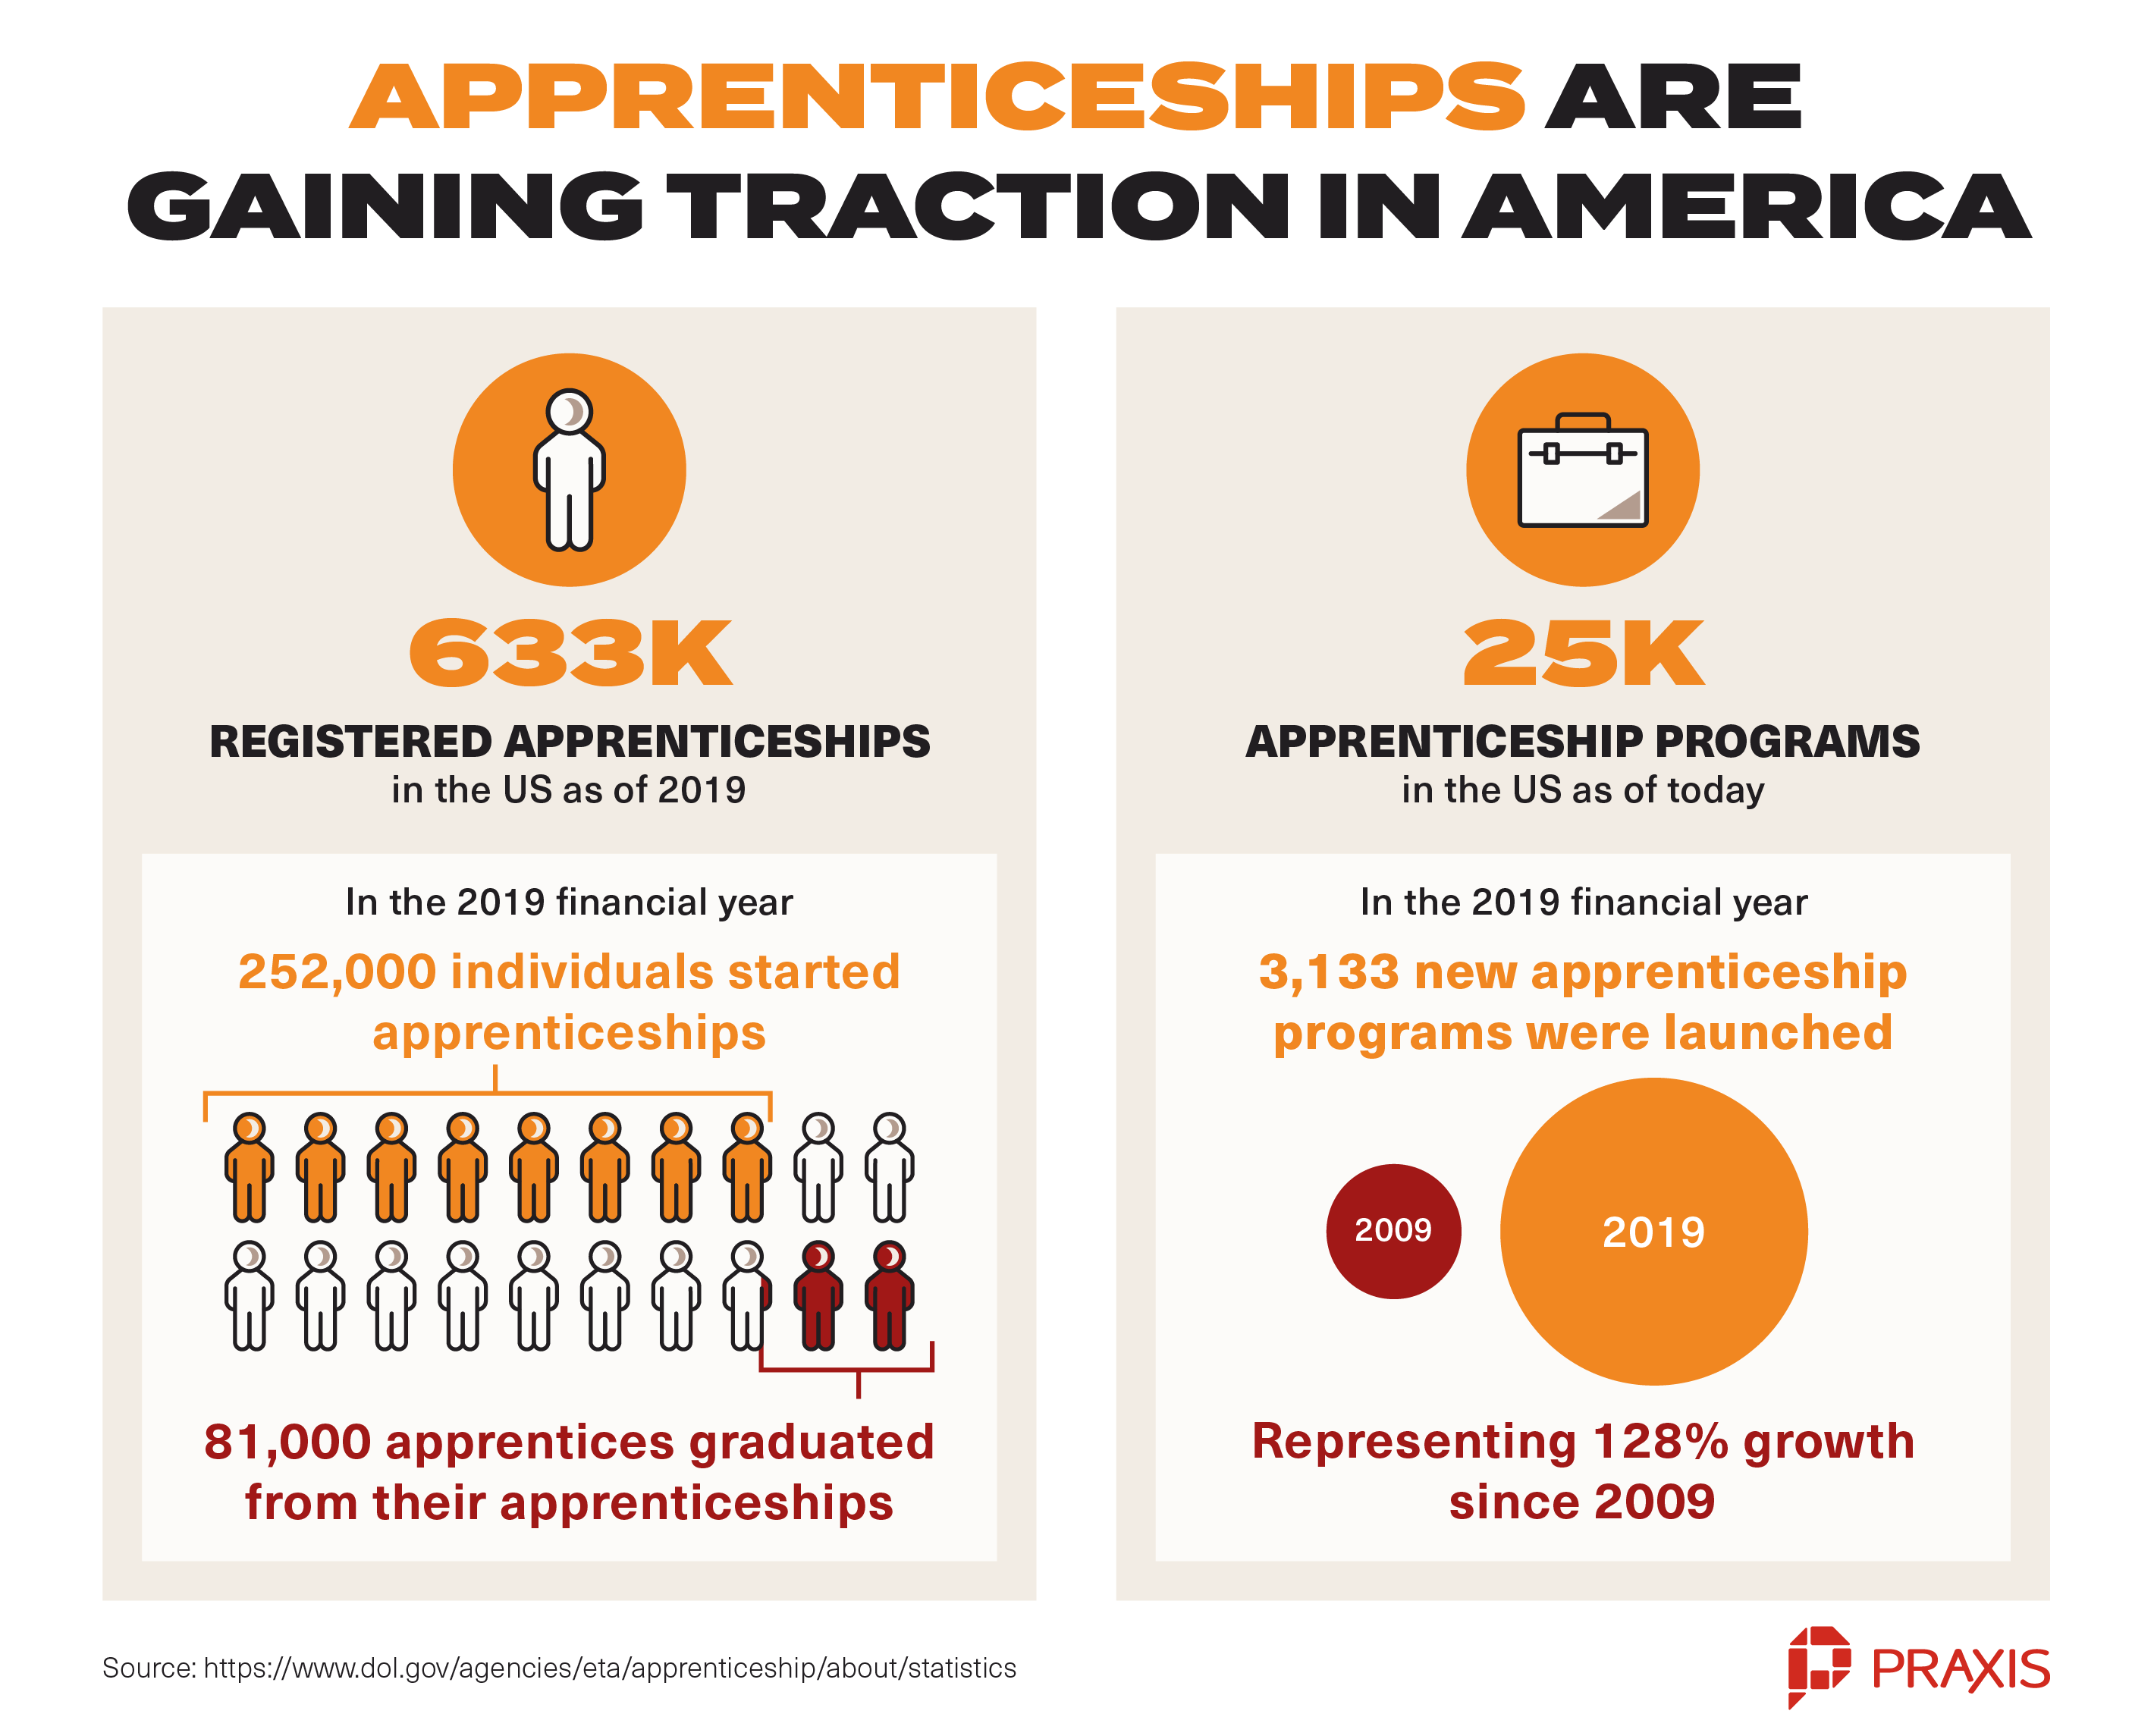 Apprenticeships in America